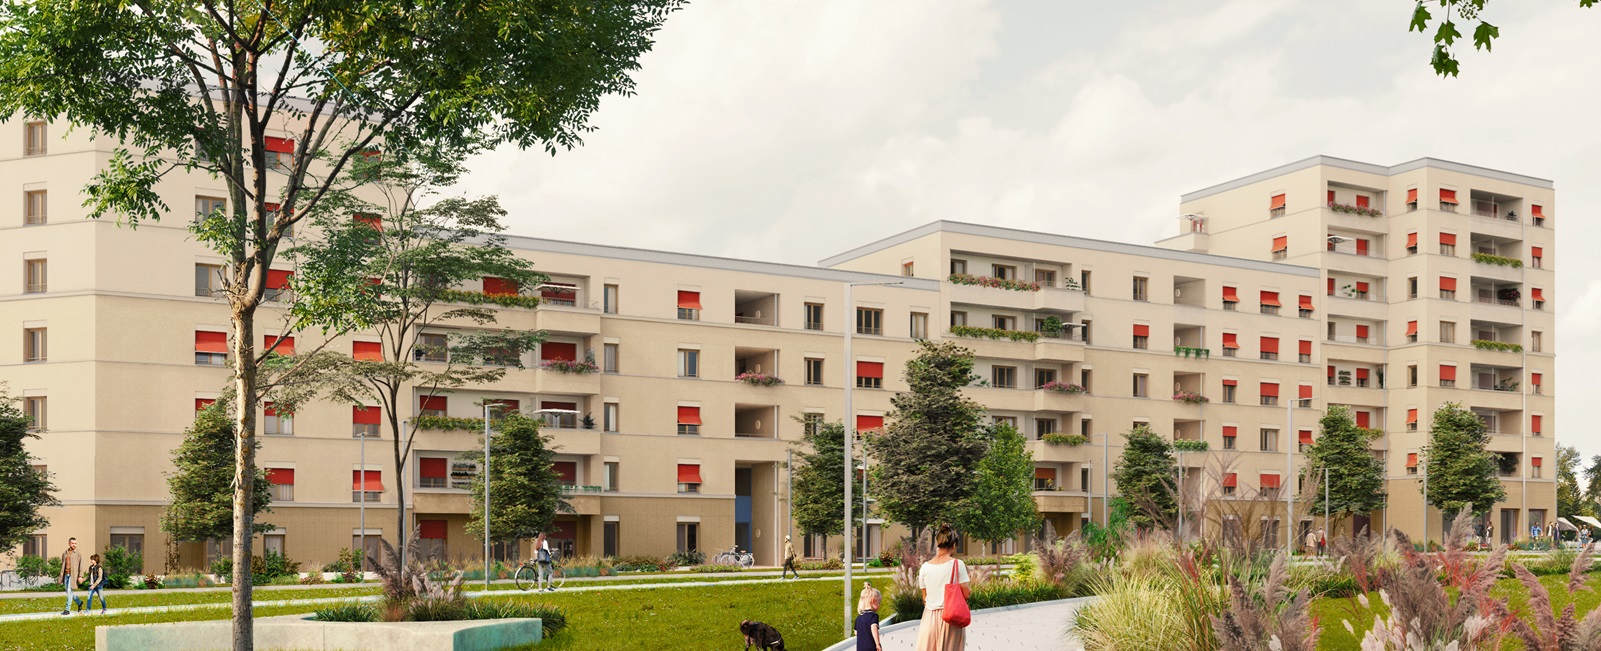 Visualisierungen der neuen geförderten Mietwohnungen in Nürnberg Lichtenreuth